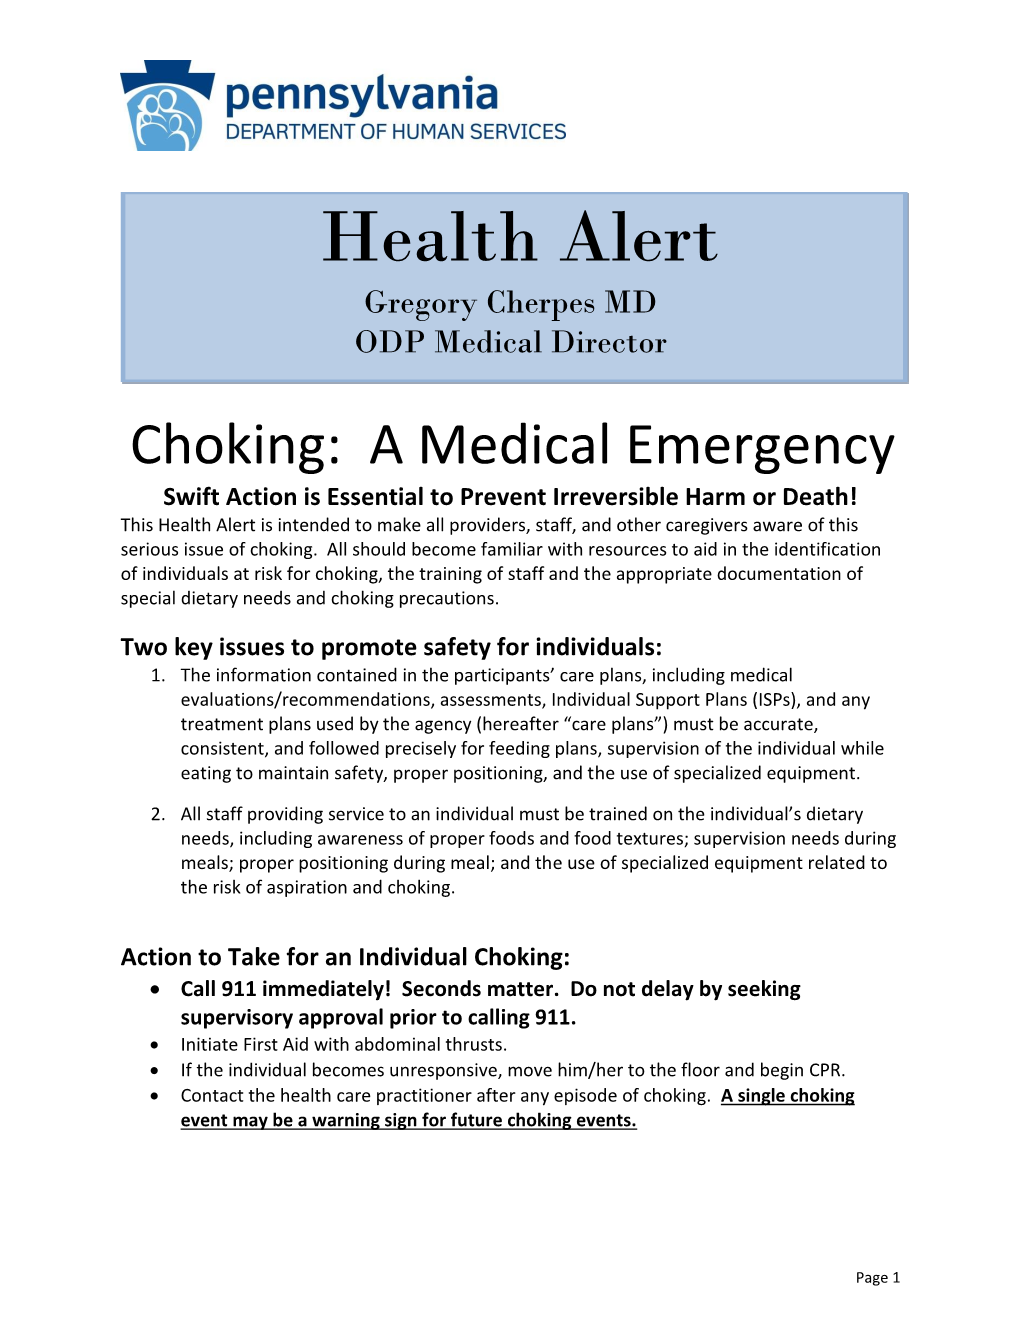 Health Alert: Chocking Is a Medical Emergency